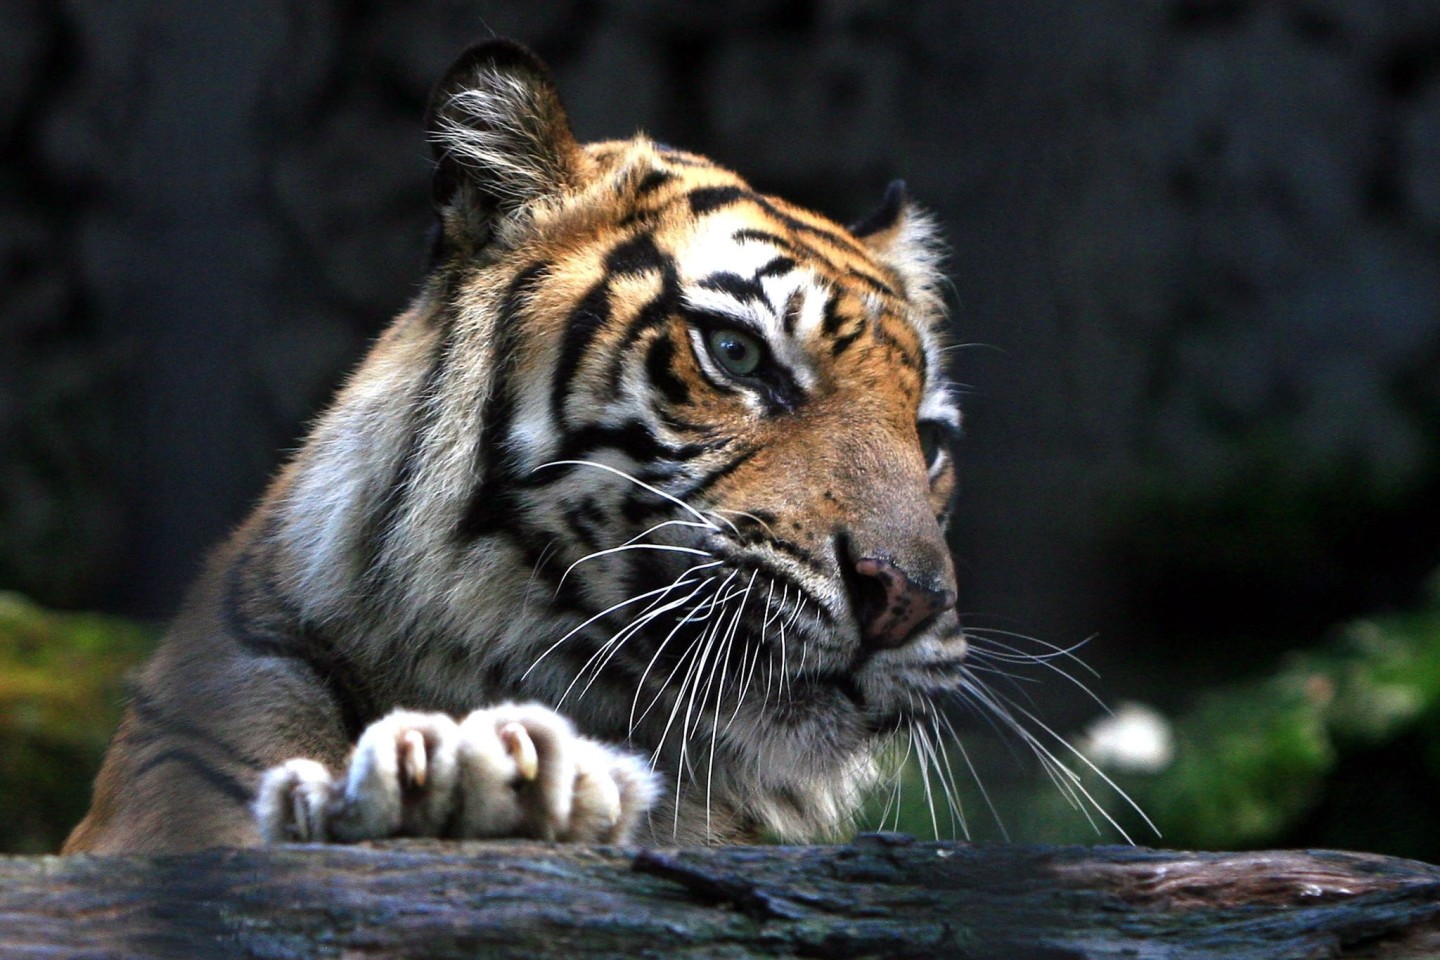 Ein Sumatra-Tiger im Zoo von Surabaya, Indonesien. Ein Tiger dieser Art hat einen Mann angegriffen.